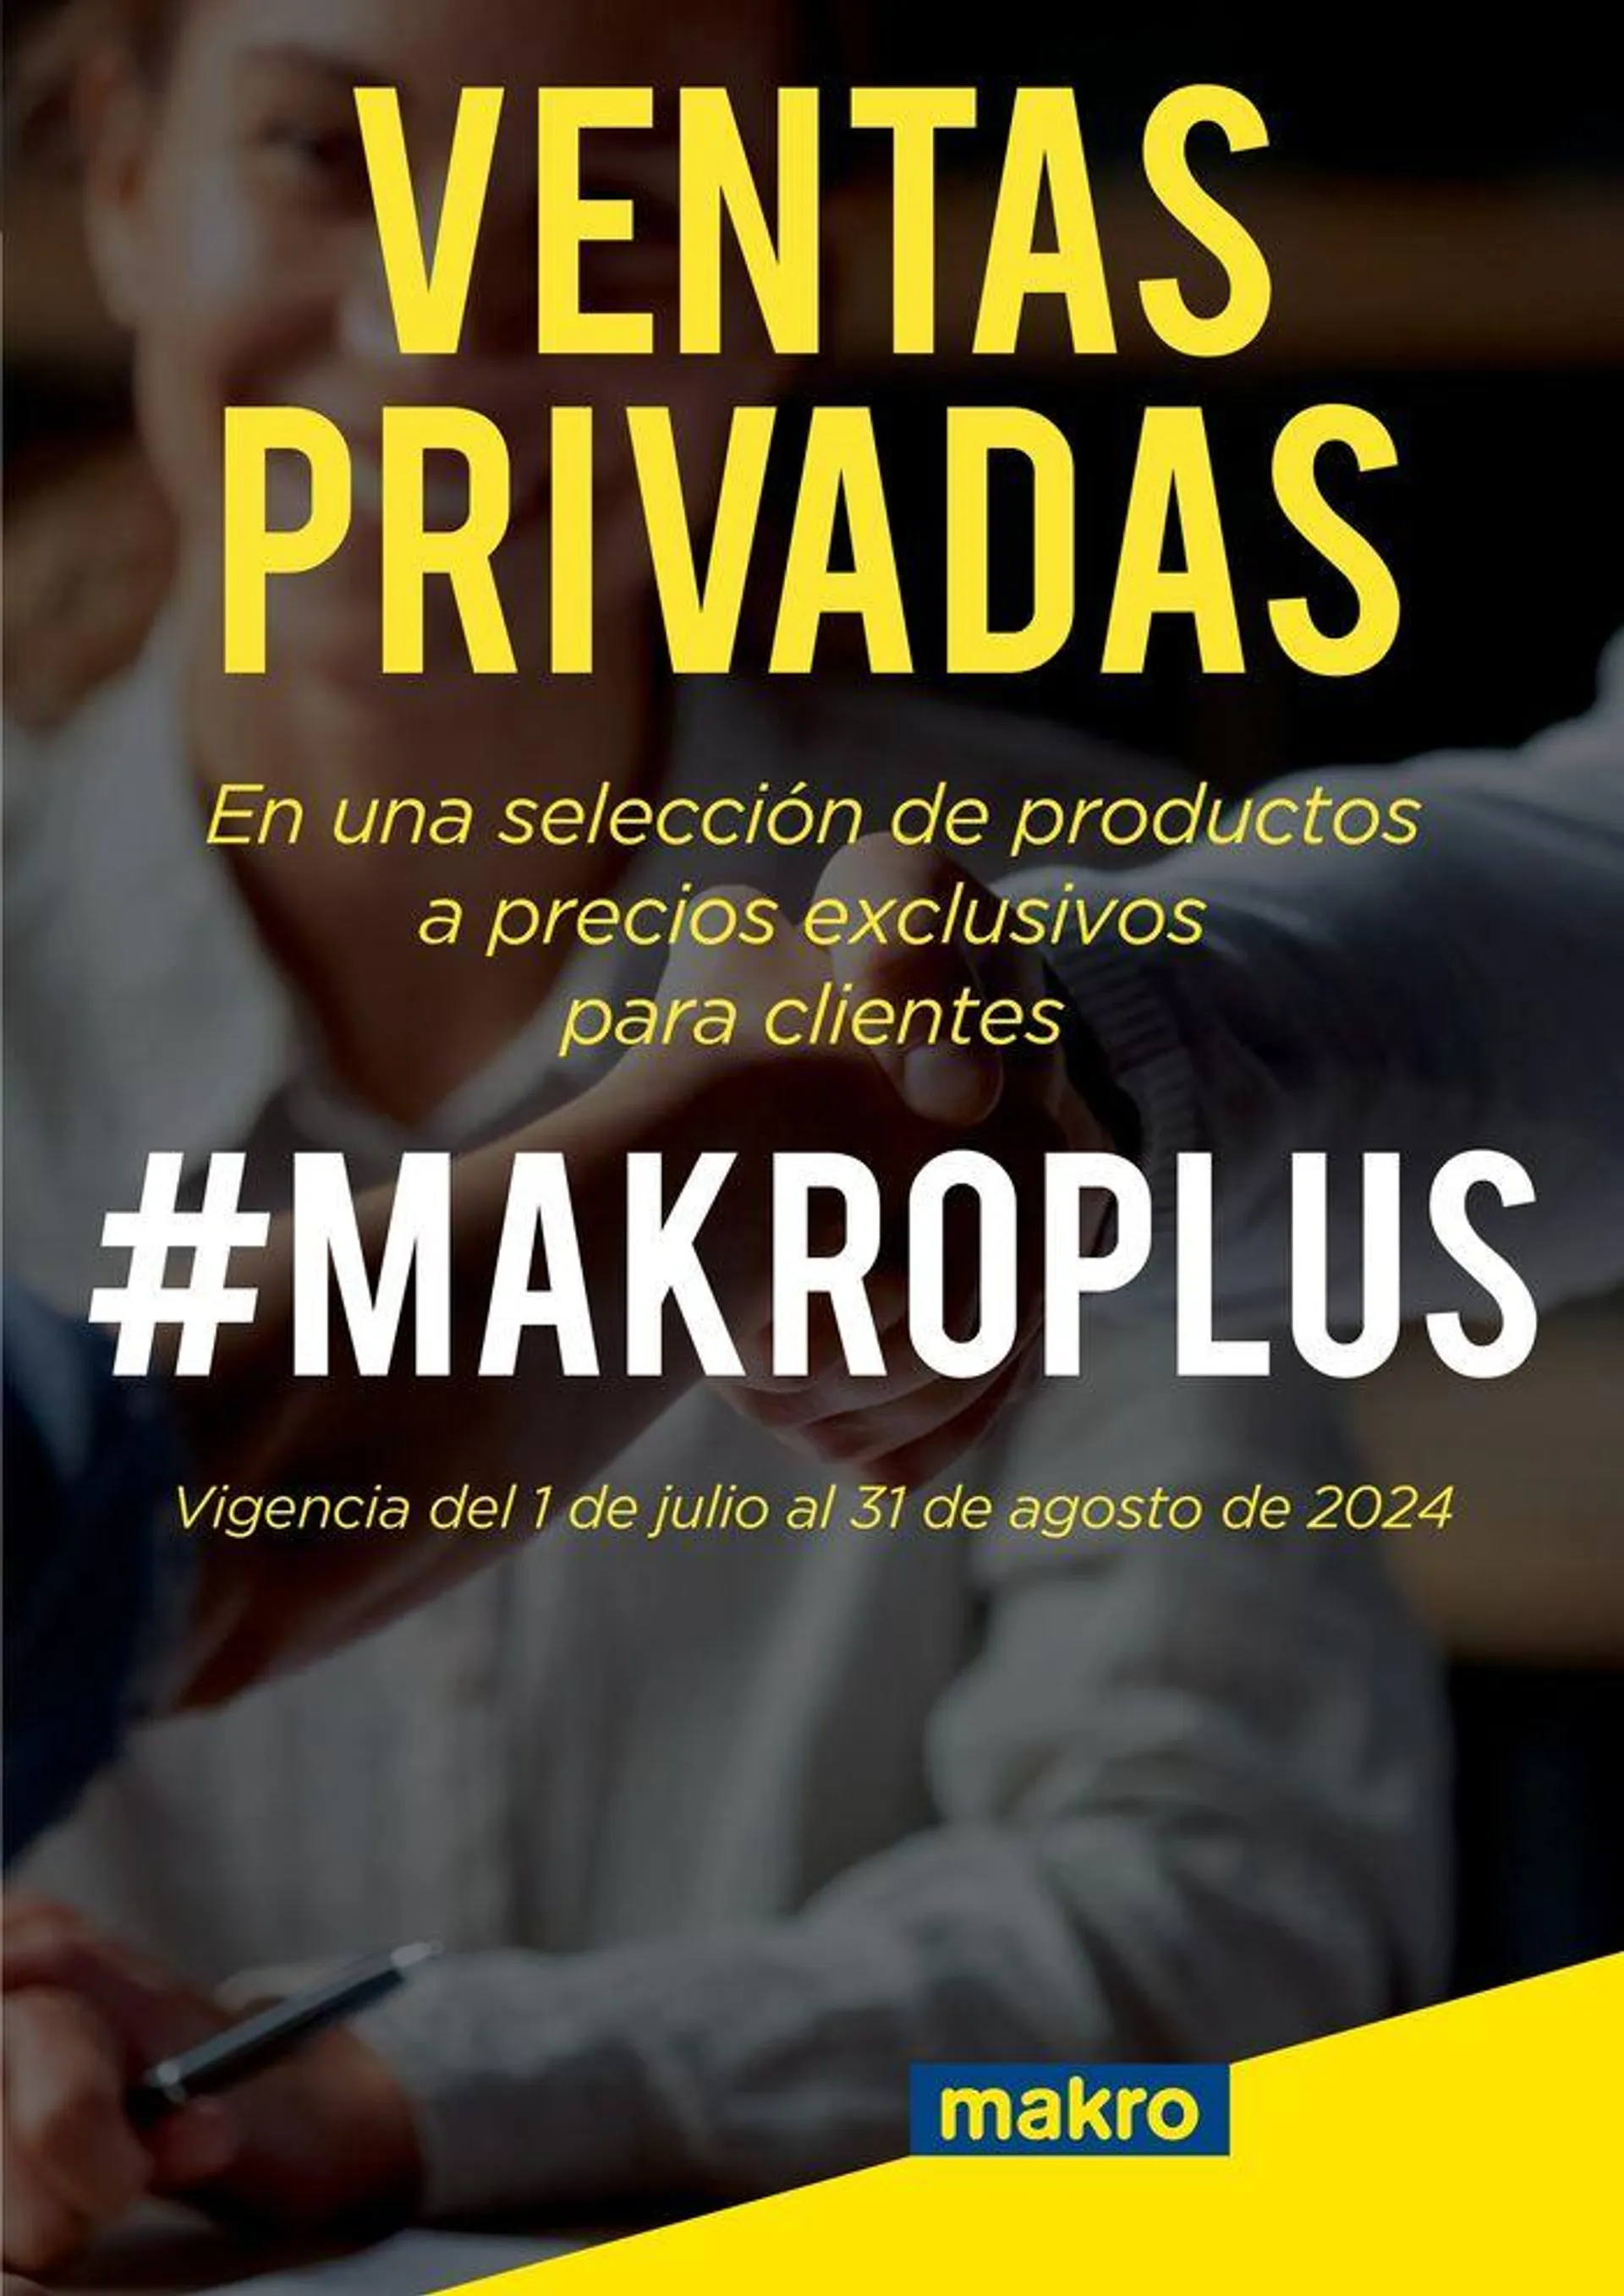 VENTAS PRIVADAS #MAKROPLUS - 1